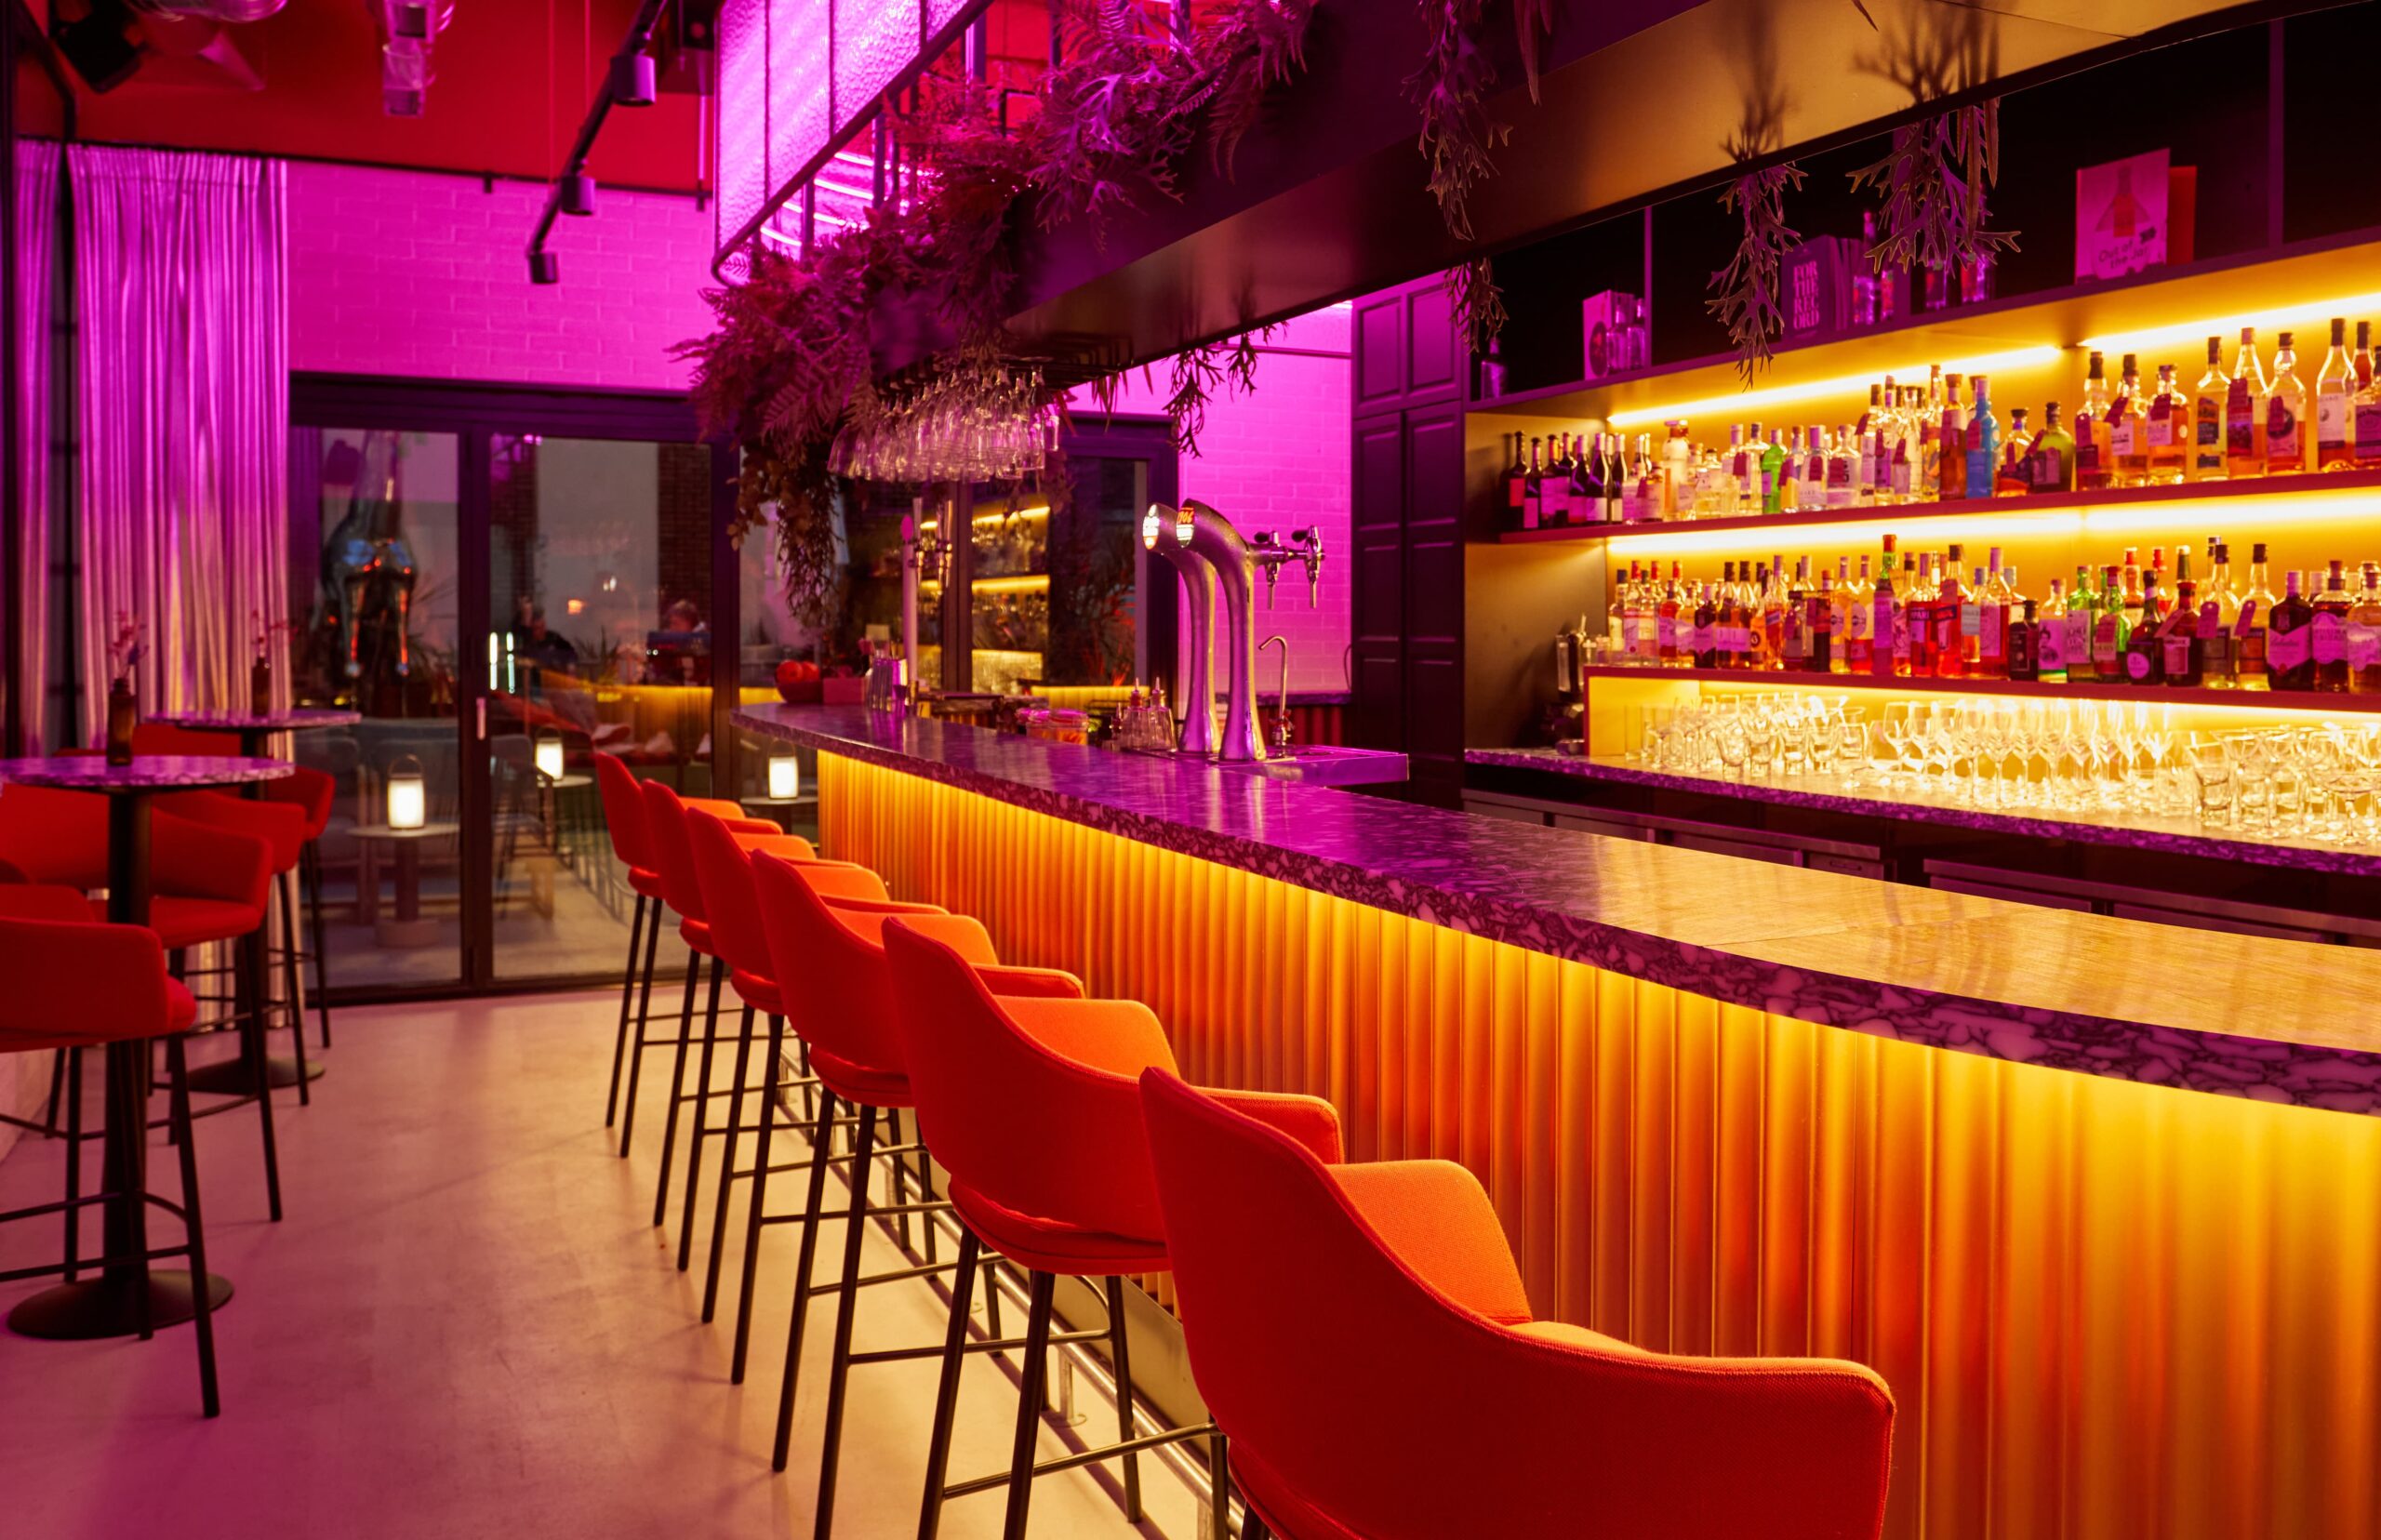 Bar met oranje en roze lichten, hoge barkrukken.